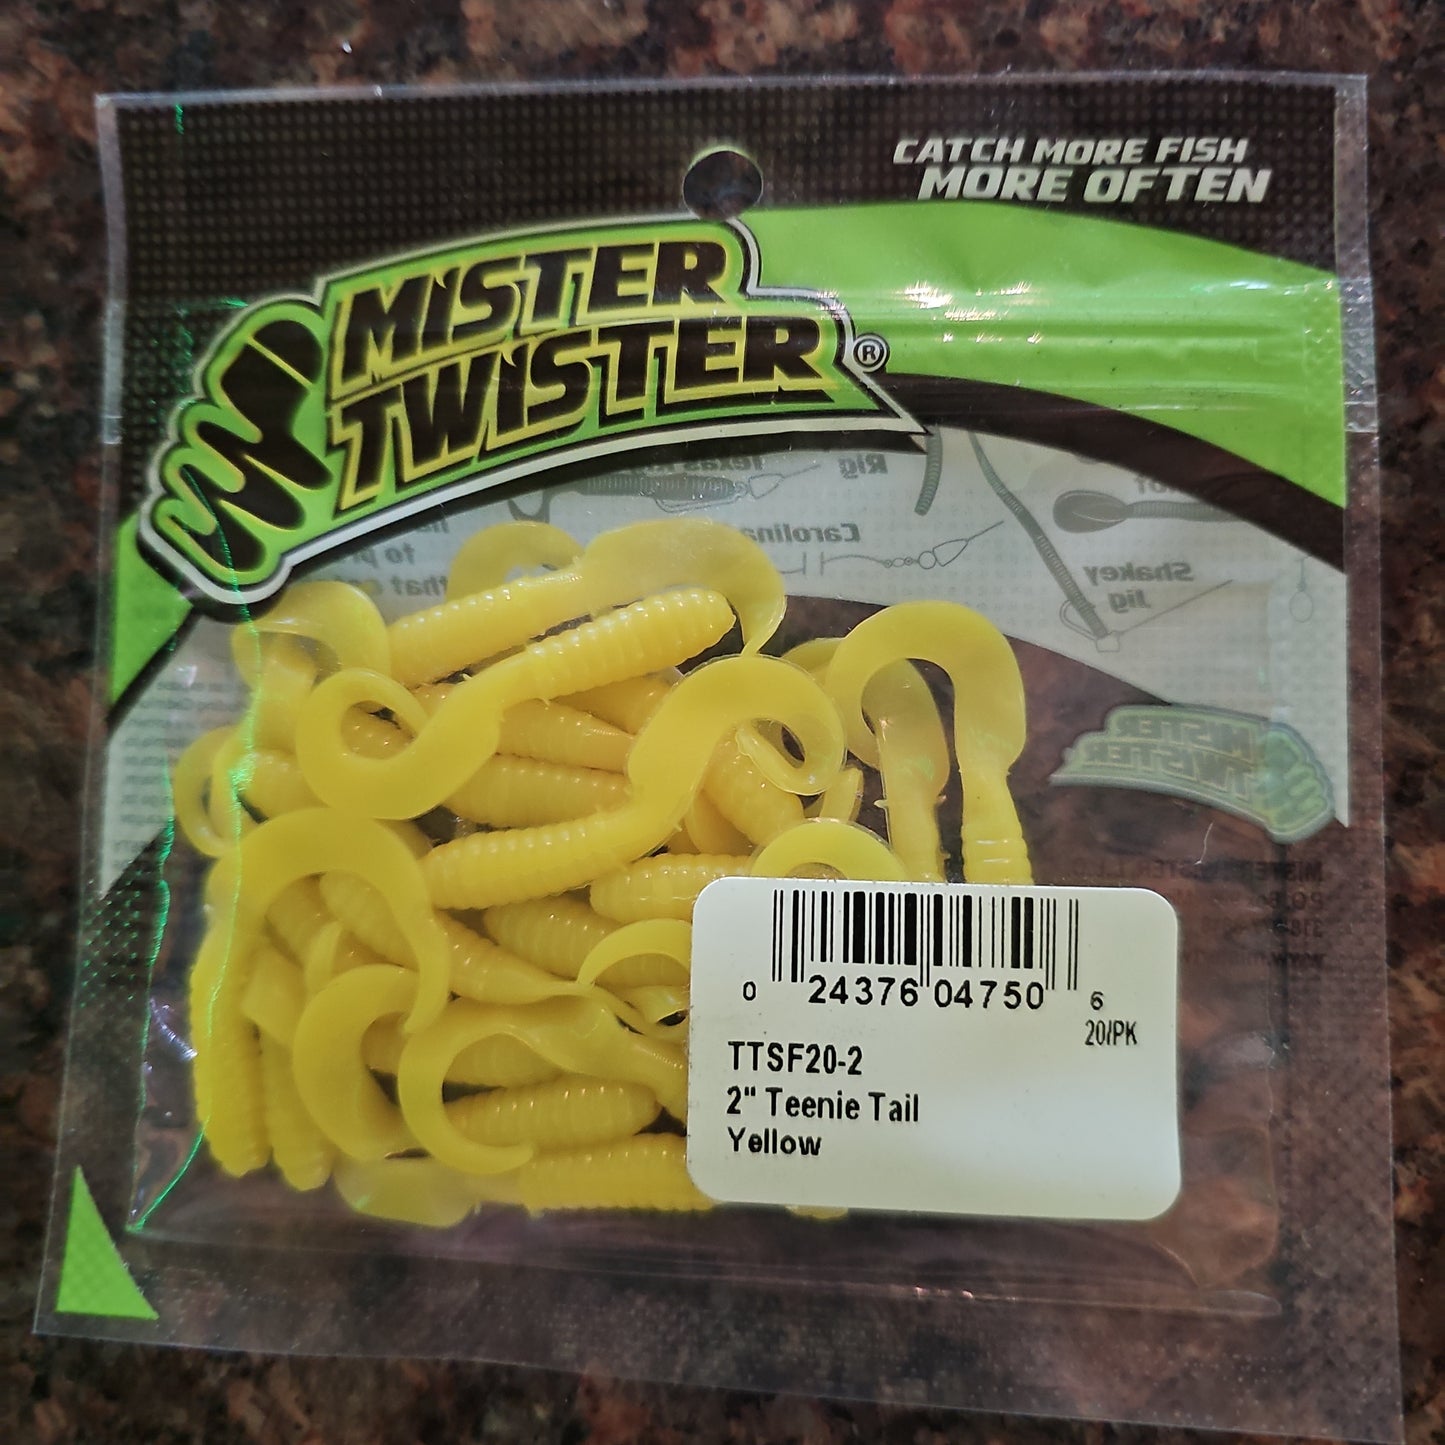 Mister Twister 2" Teenie Tail